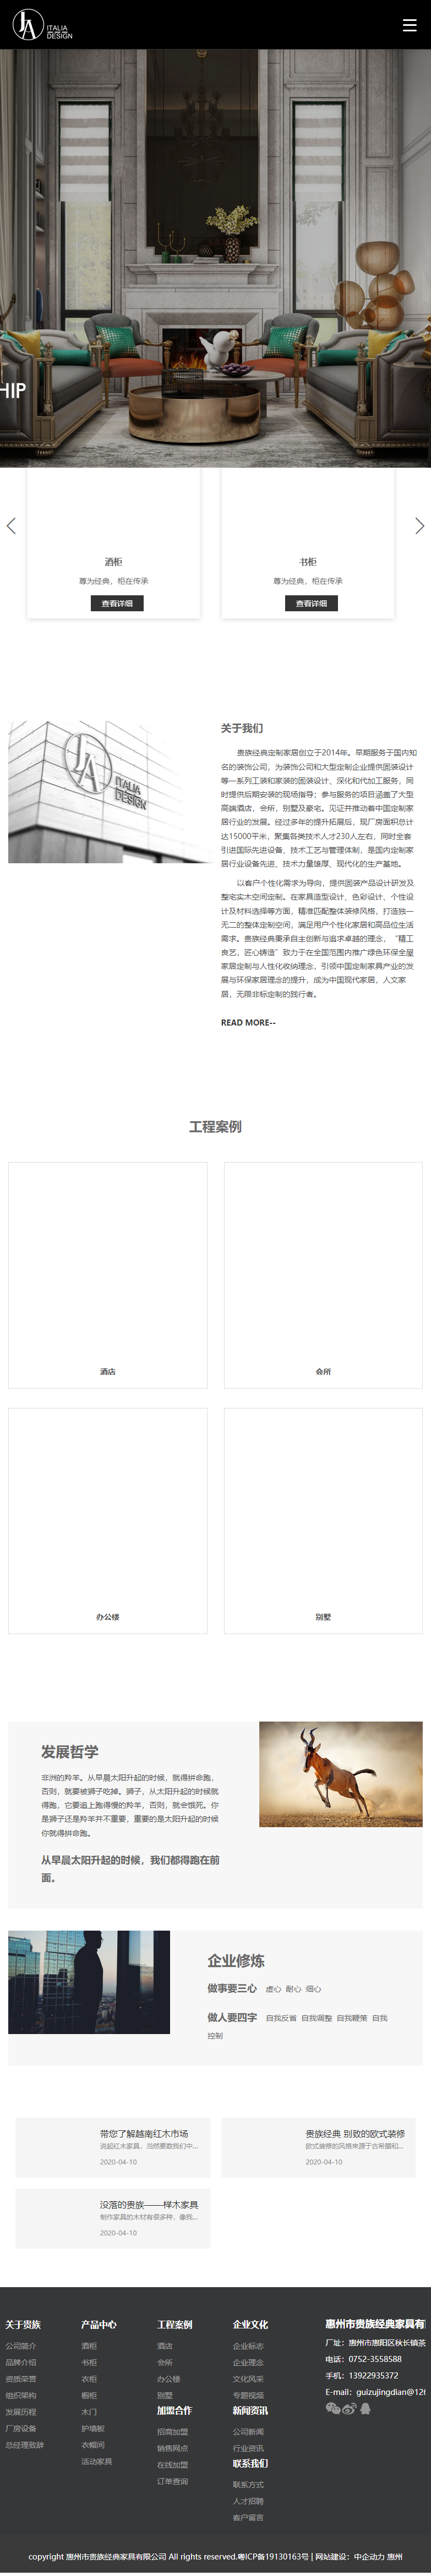 惠州市贵族经典家具有限公司网站案例